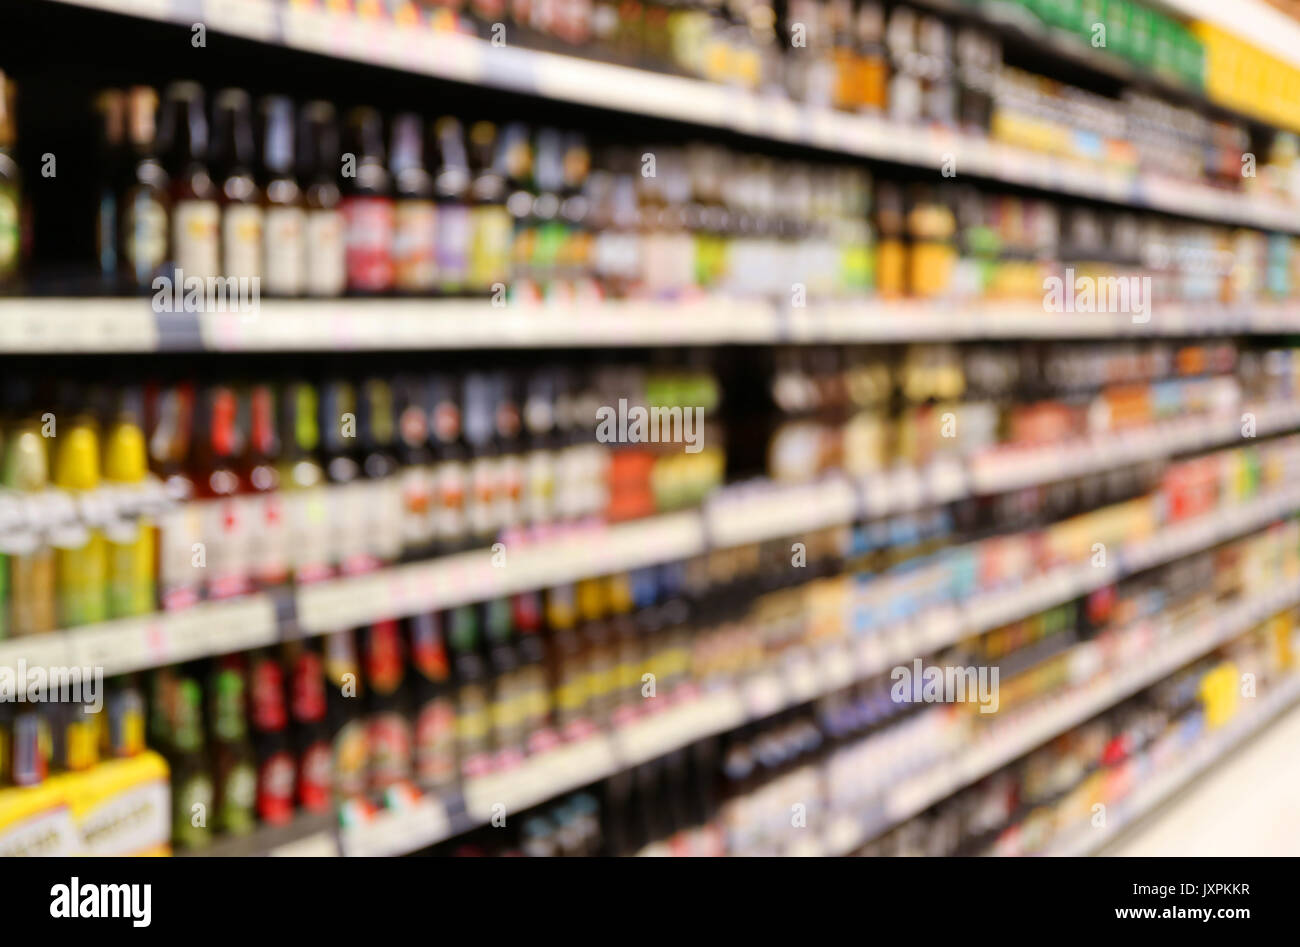 Abstract drogheria sfocata ripiano pieno di beni di consumo in un supermercato Foto Stock